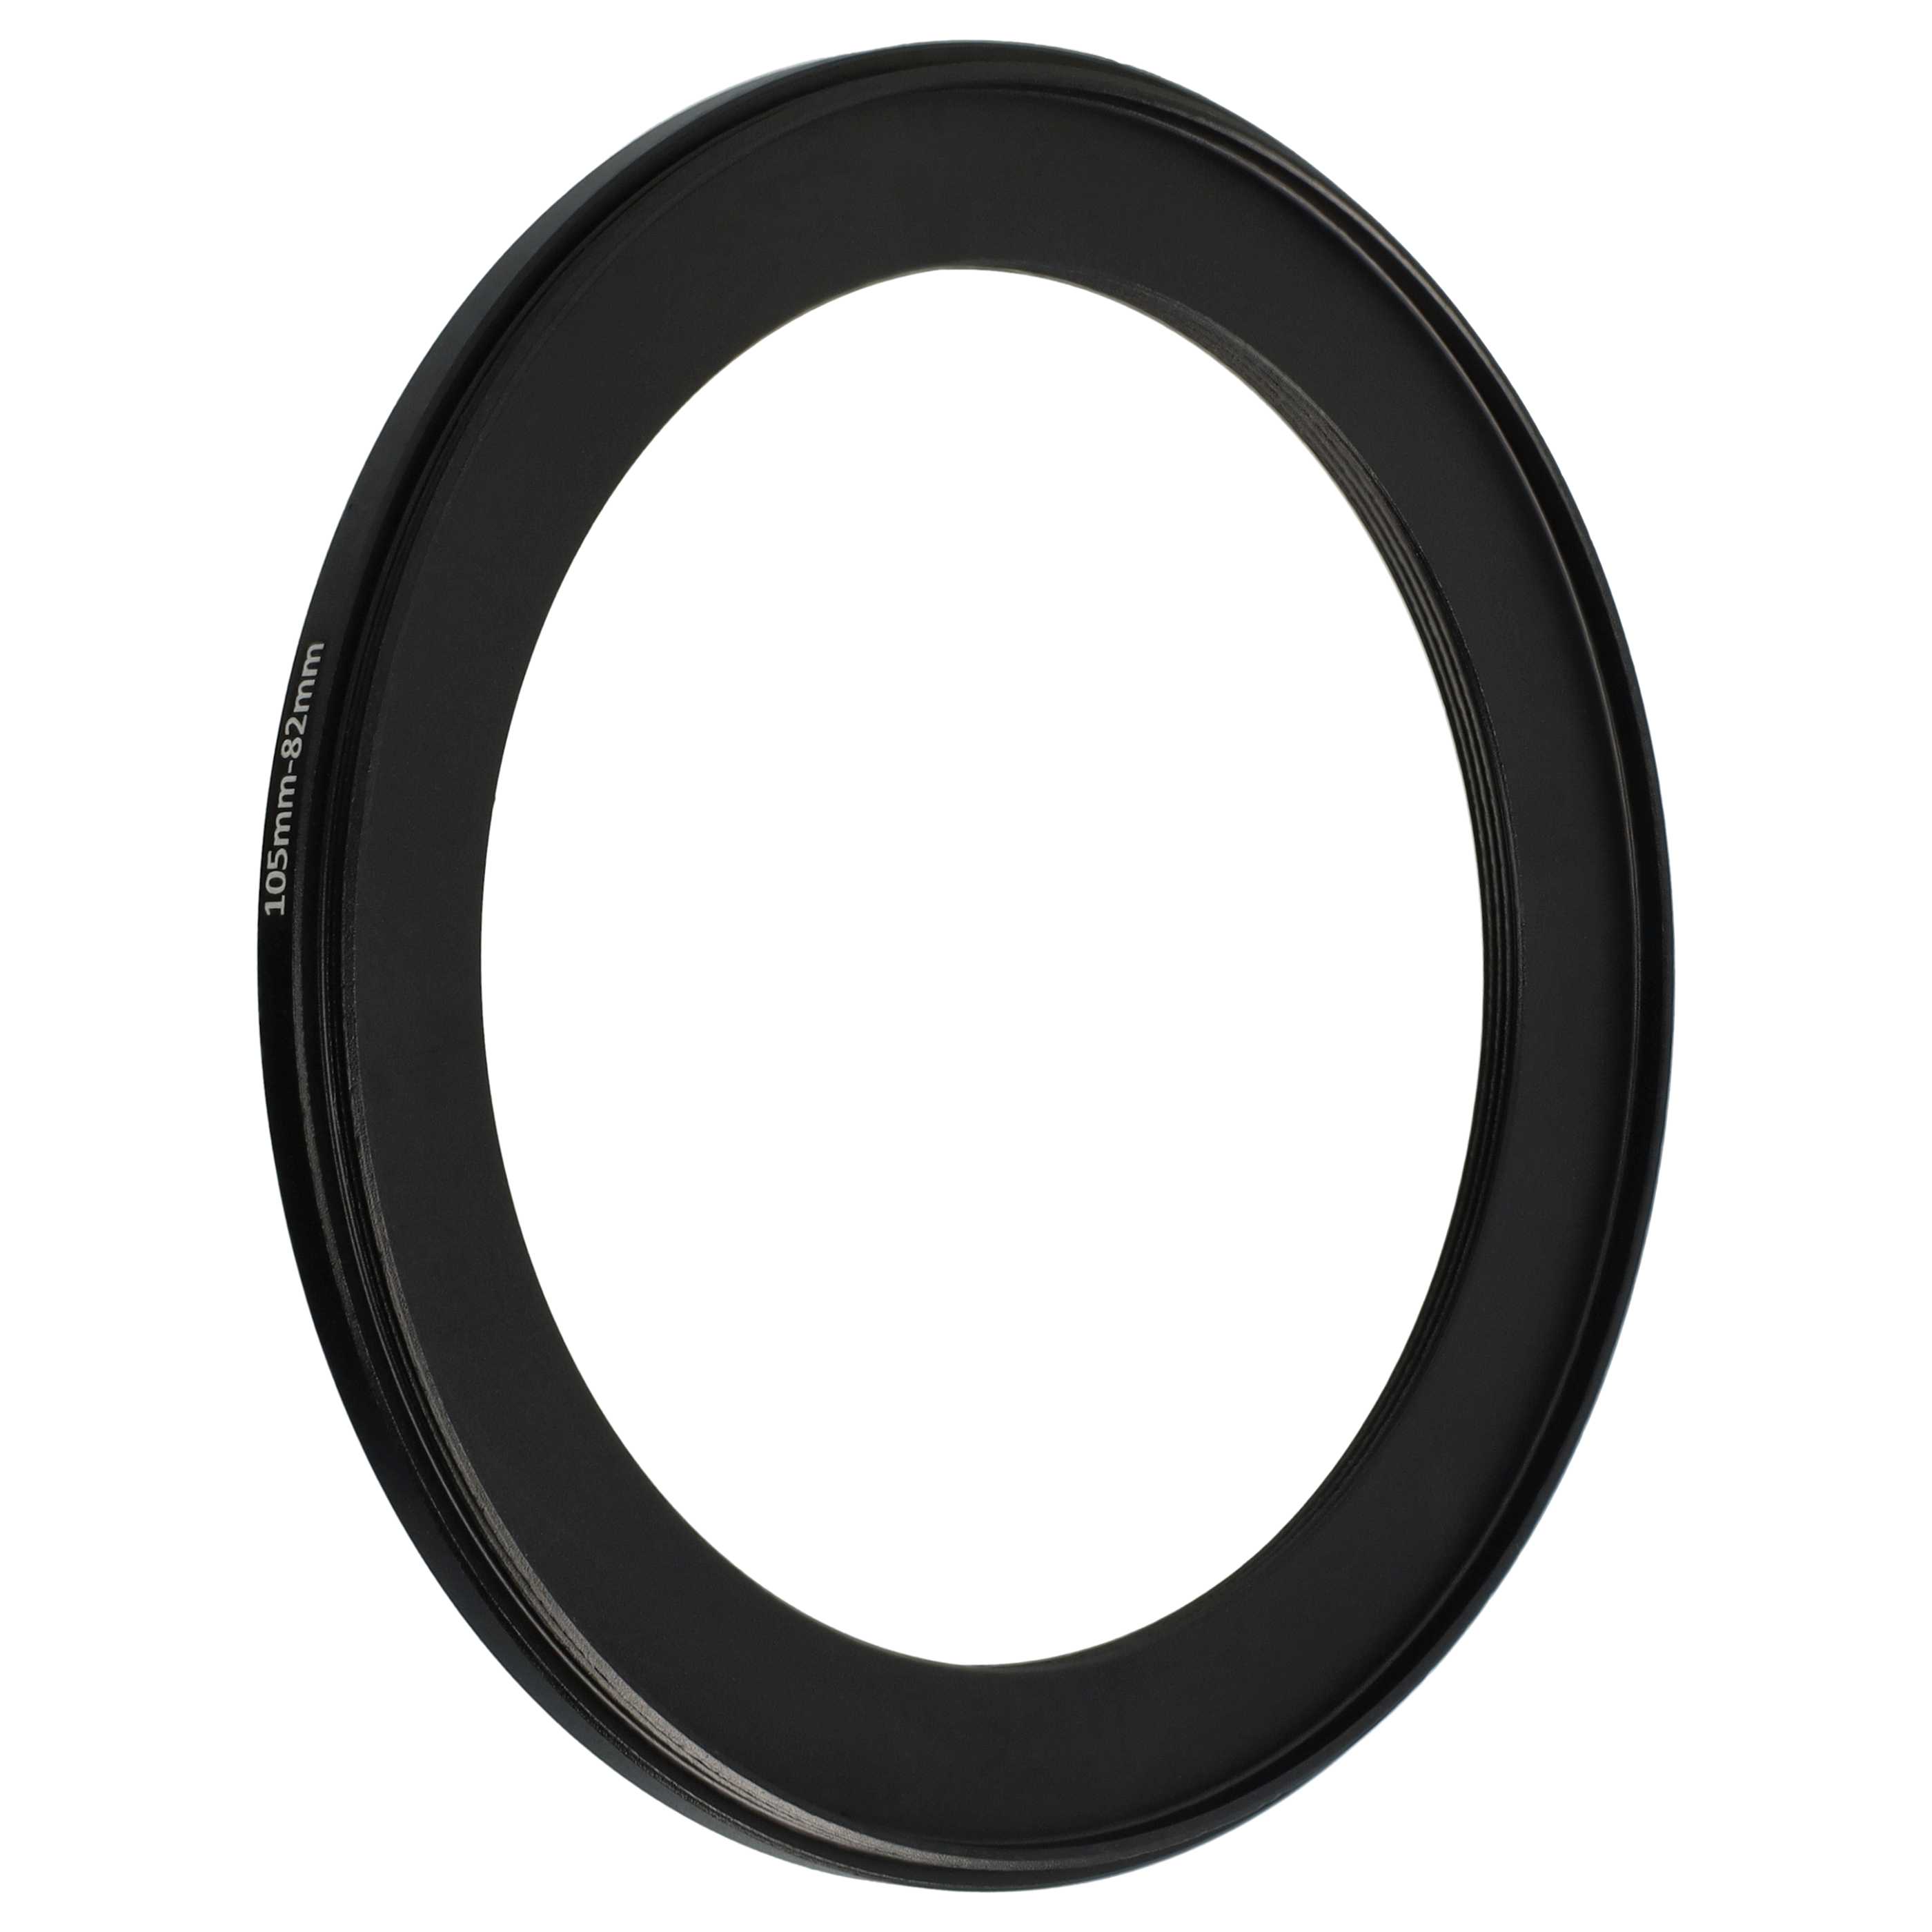 Step-Down-Ring Adapter von 105 mm auf 82 mm passend für Kamera Objektiv - Filteradapter, Metall, schwarz